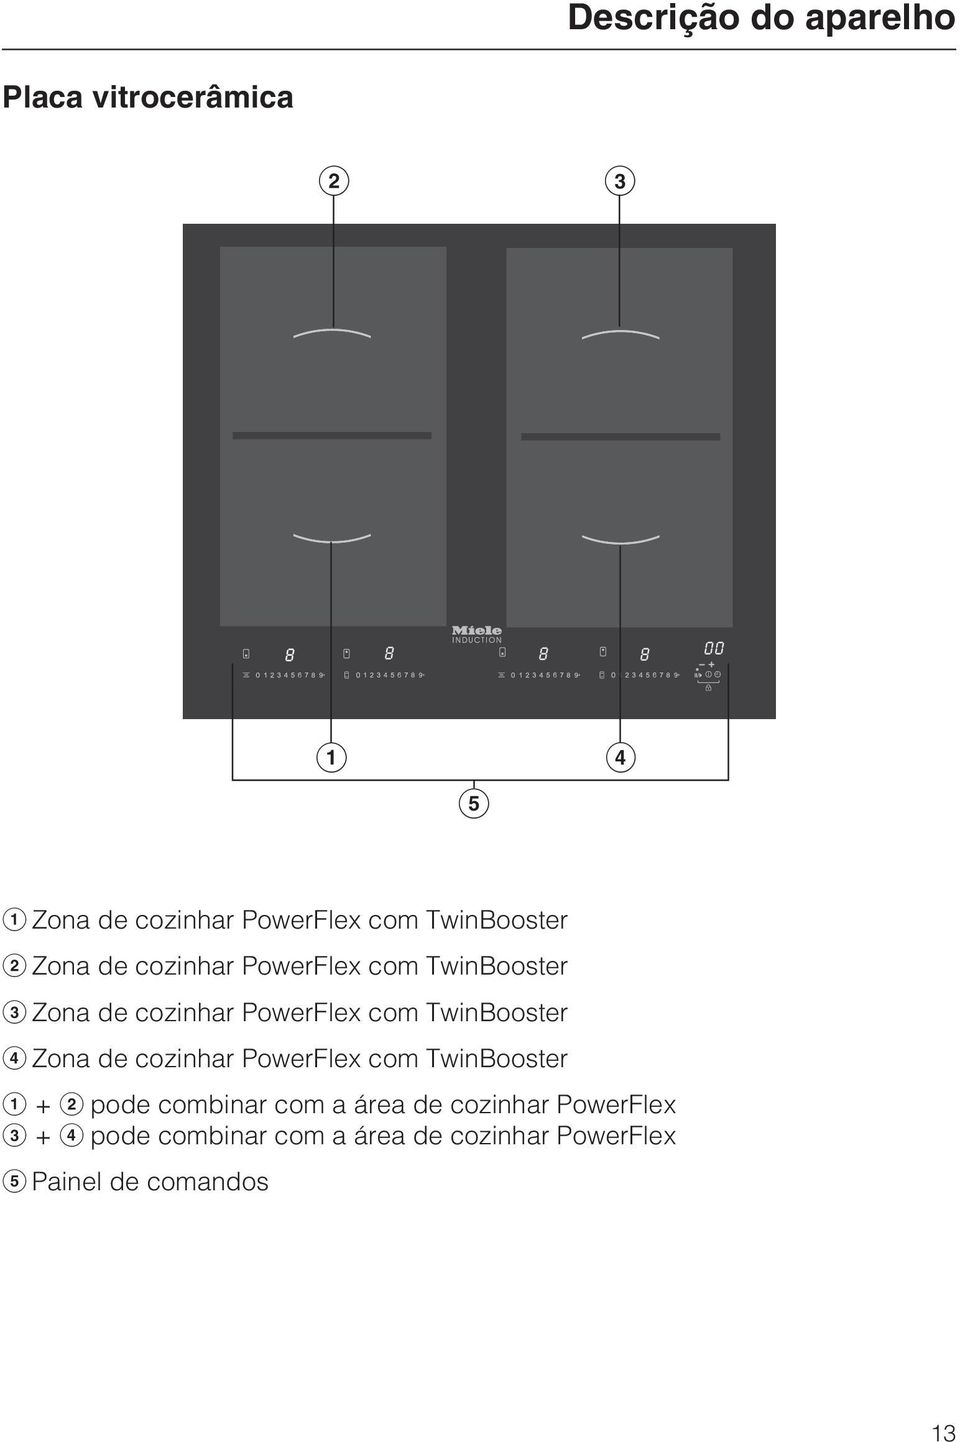 TwinBooster Zona de cozinhar PowerFlex com TwinBooster + pode combinar com a área de